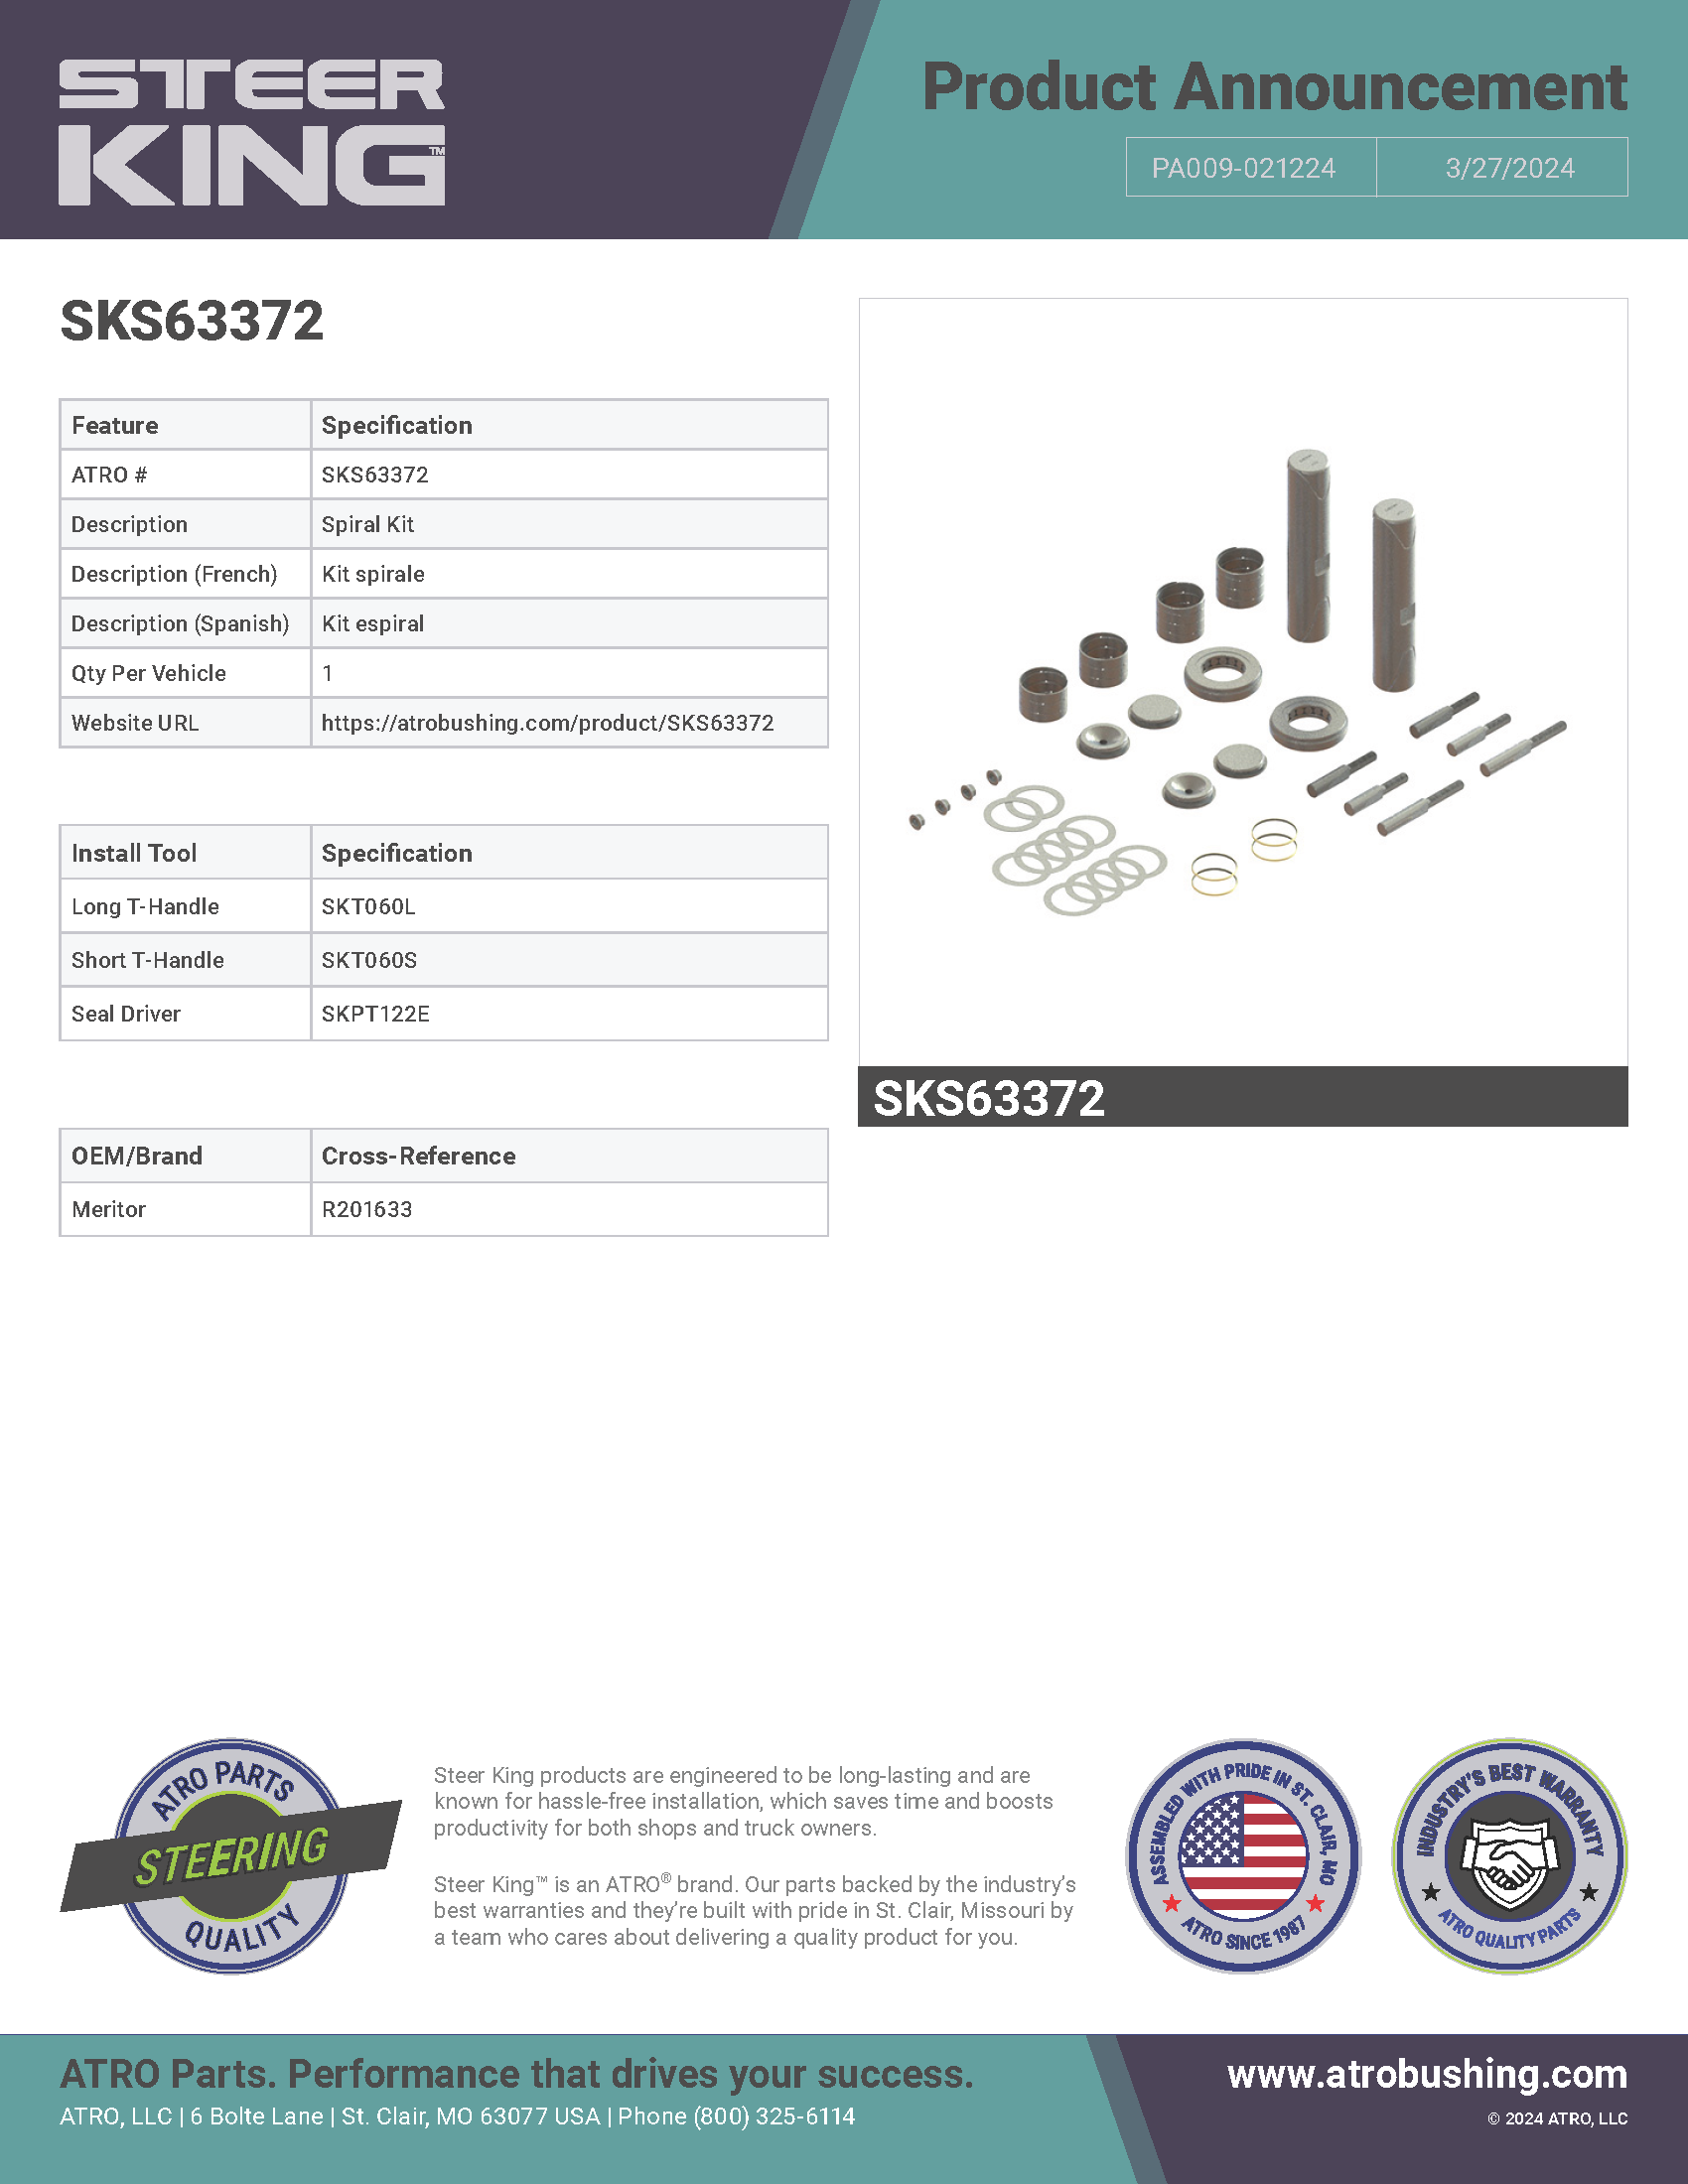 SKS63372 Spiral Kit PA009-021224